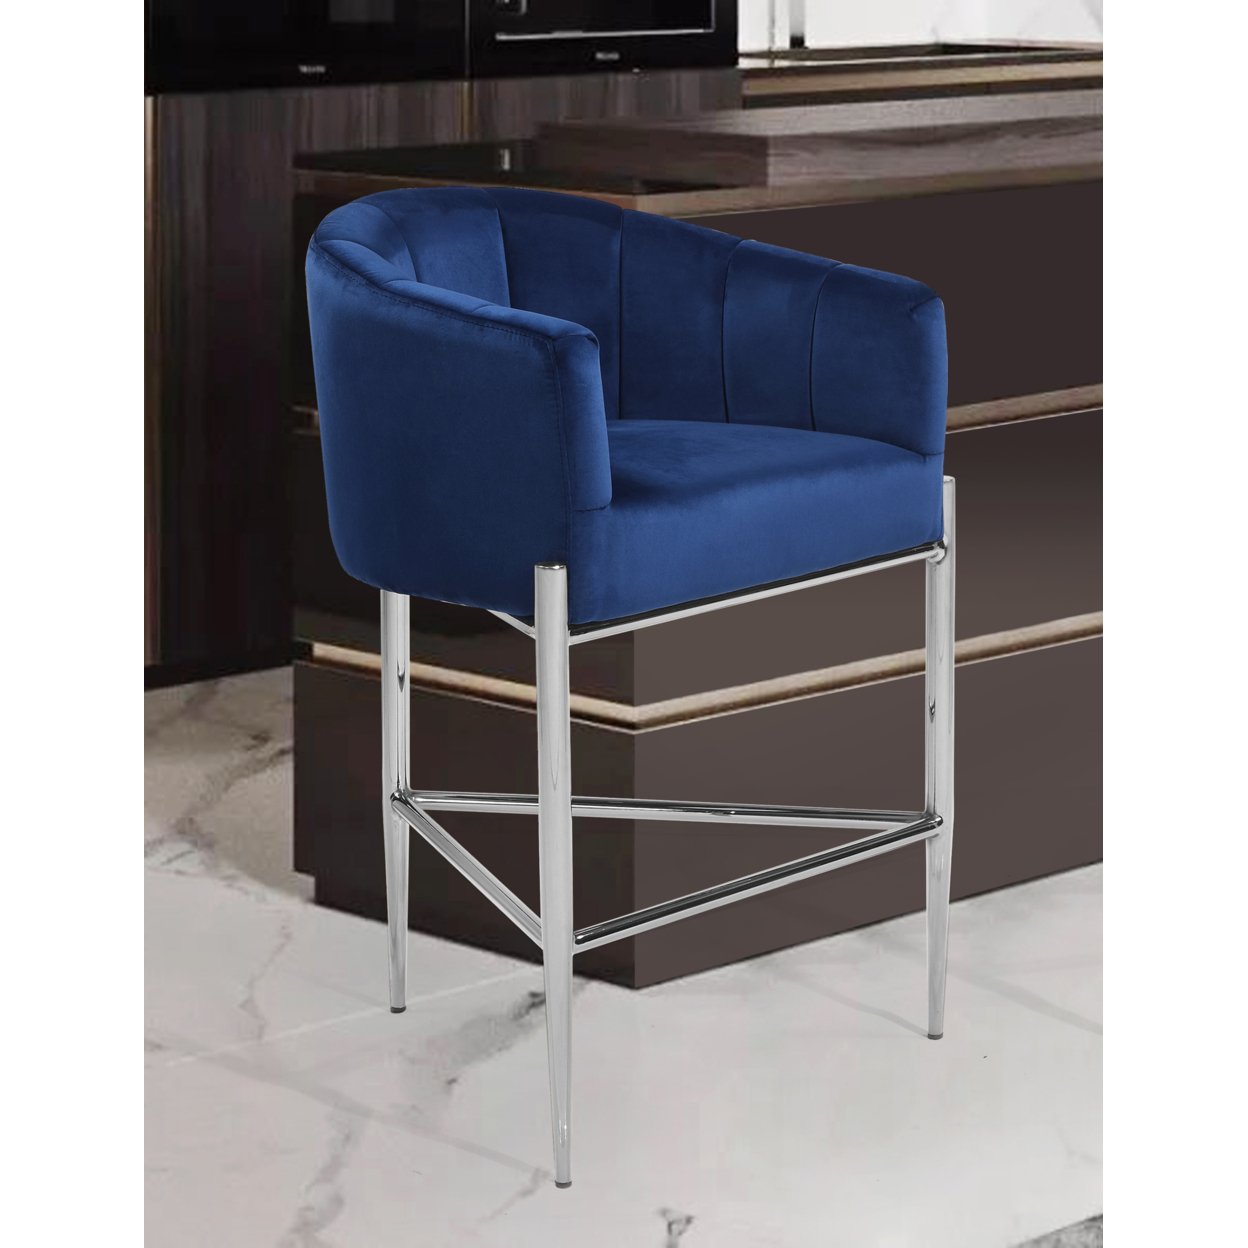 Iconic Home Ardee Counter Stool Chair Velvet Upholstered Shelter Arm Shell Design 3 Legged Chrome Tone Solid Metal Base - Navy